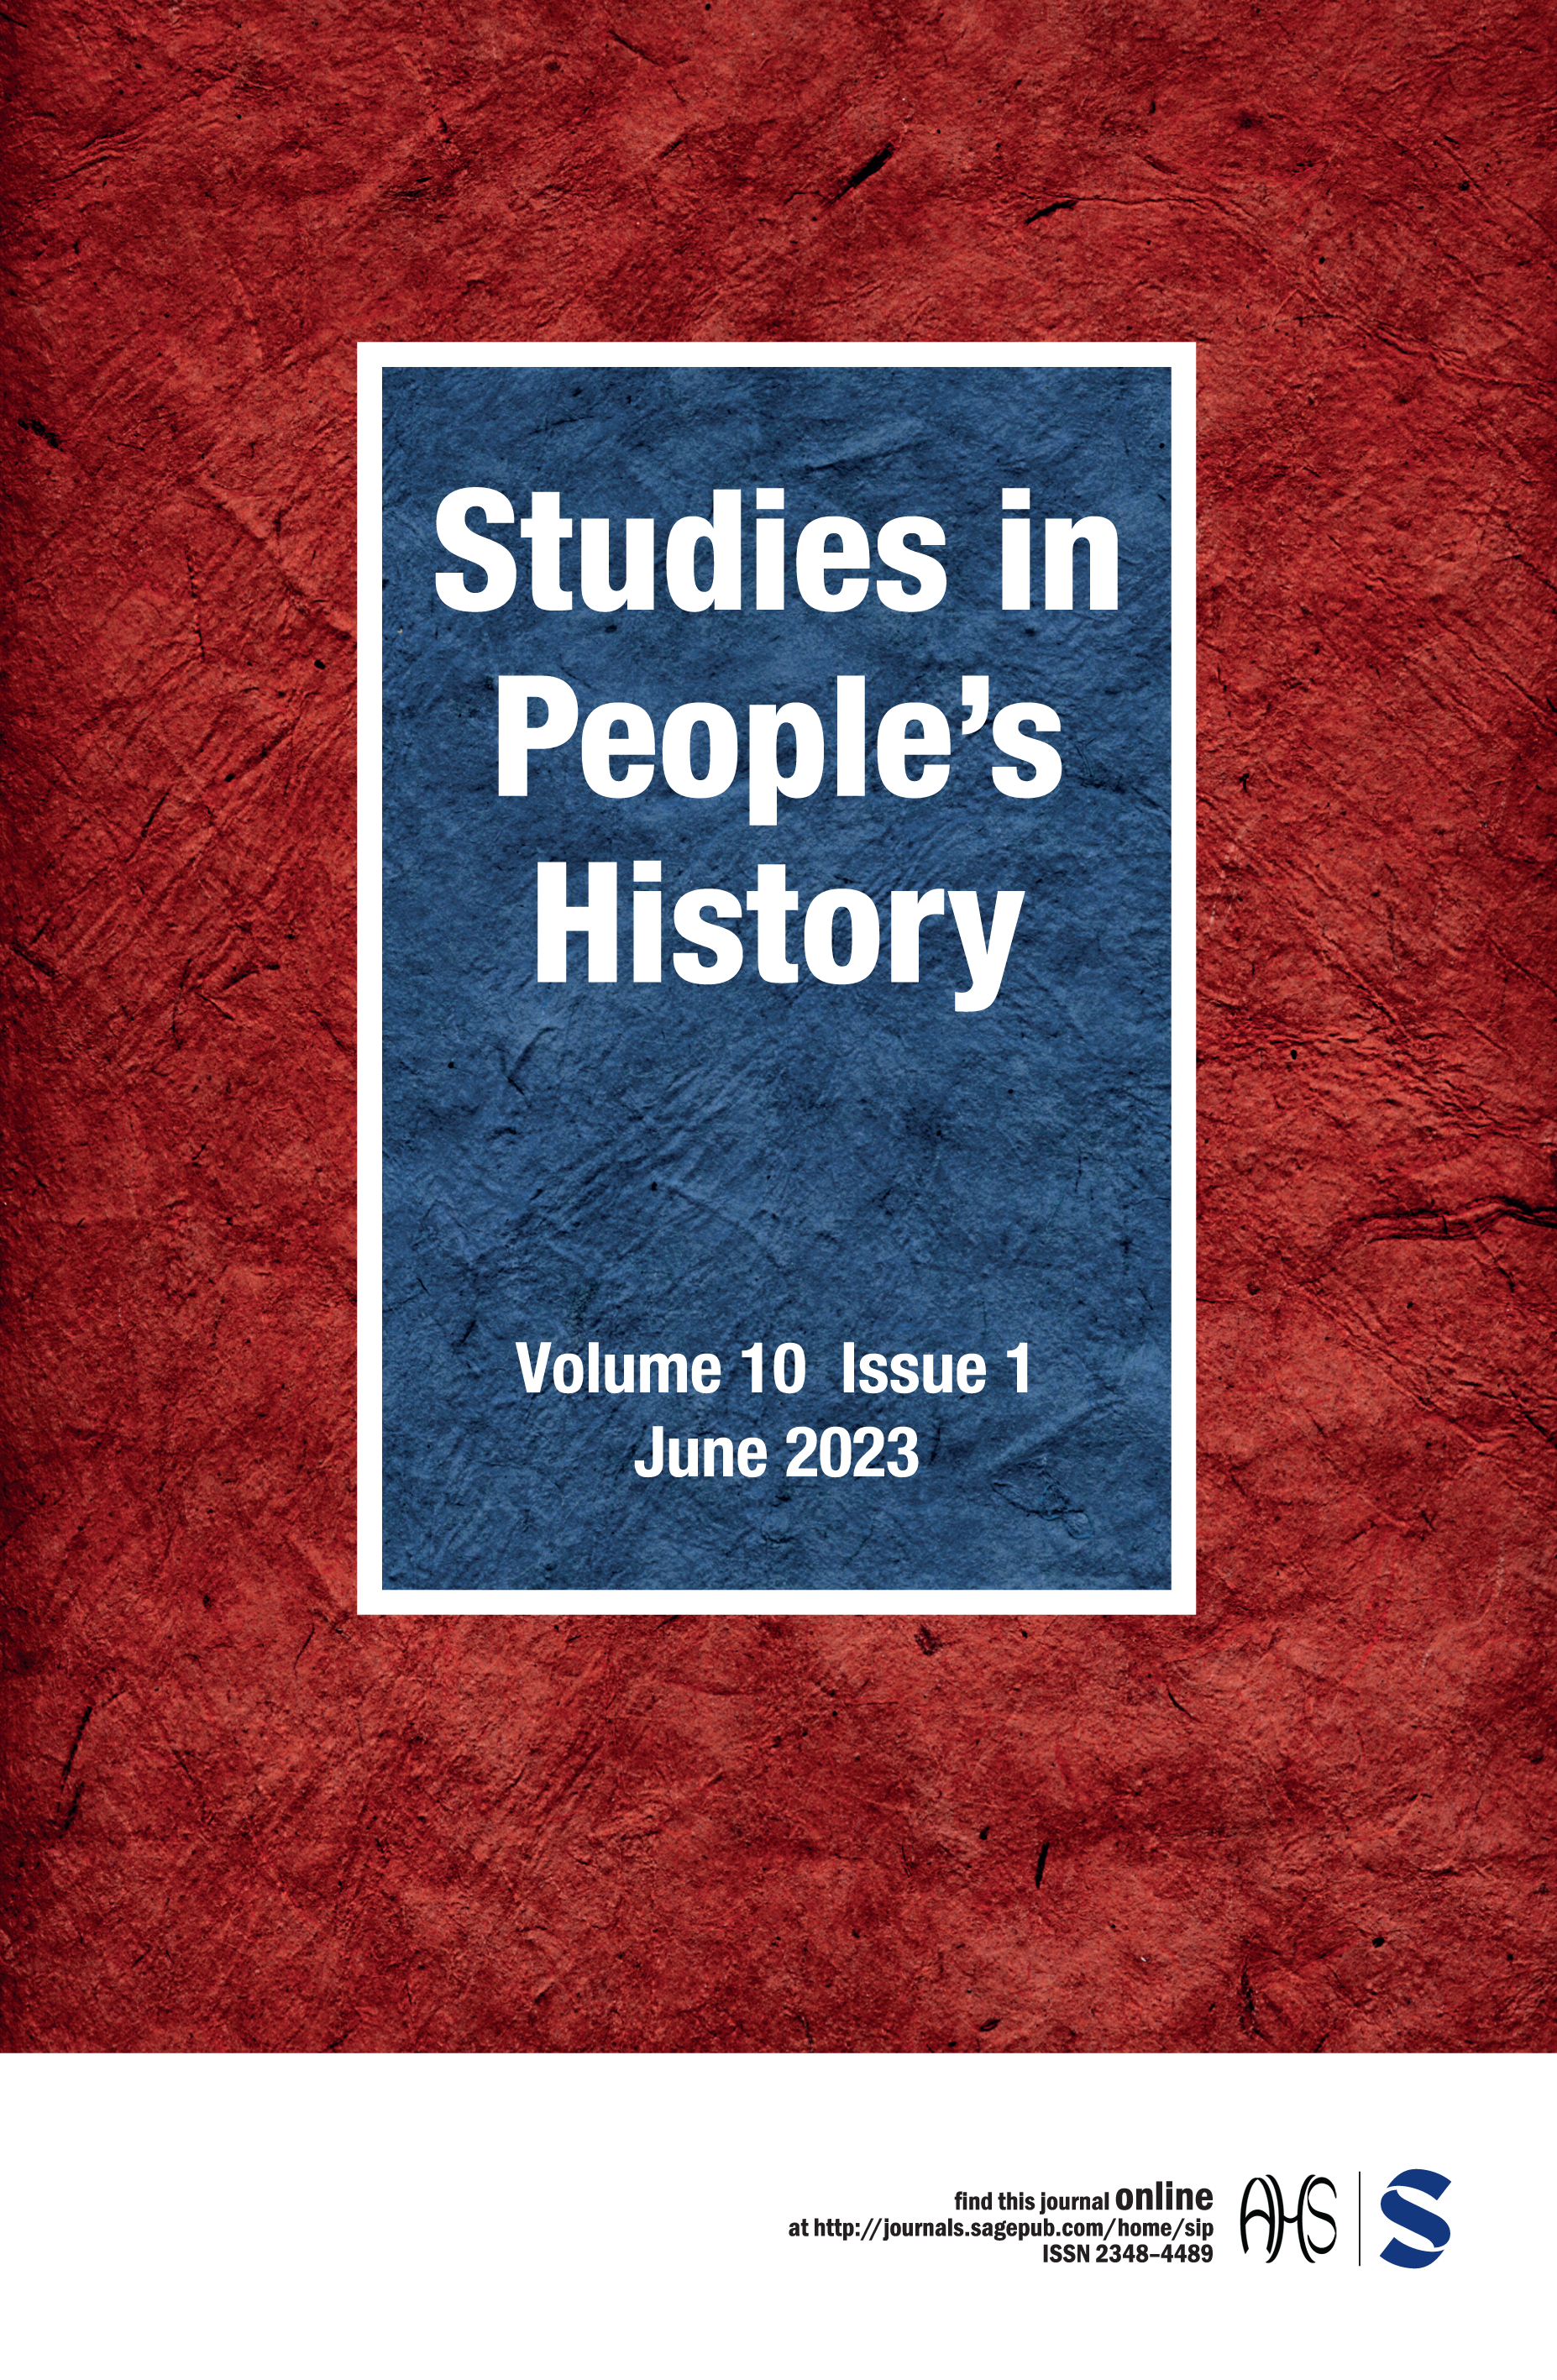 Studies in people's history.